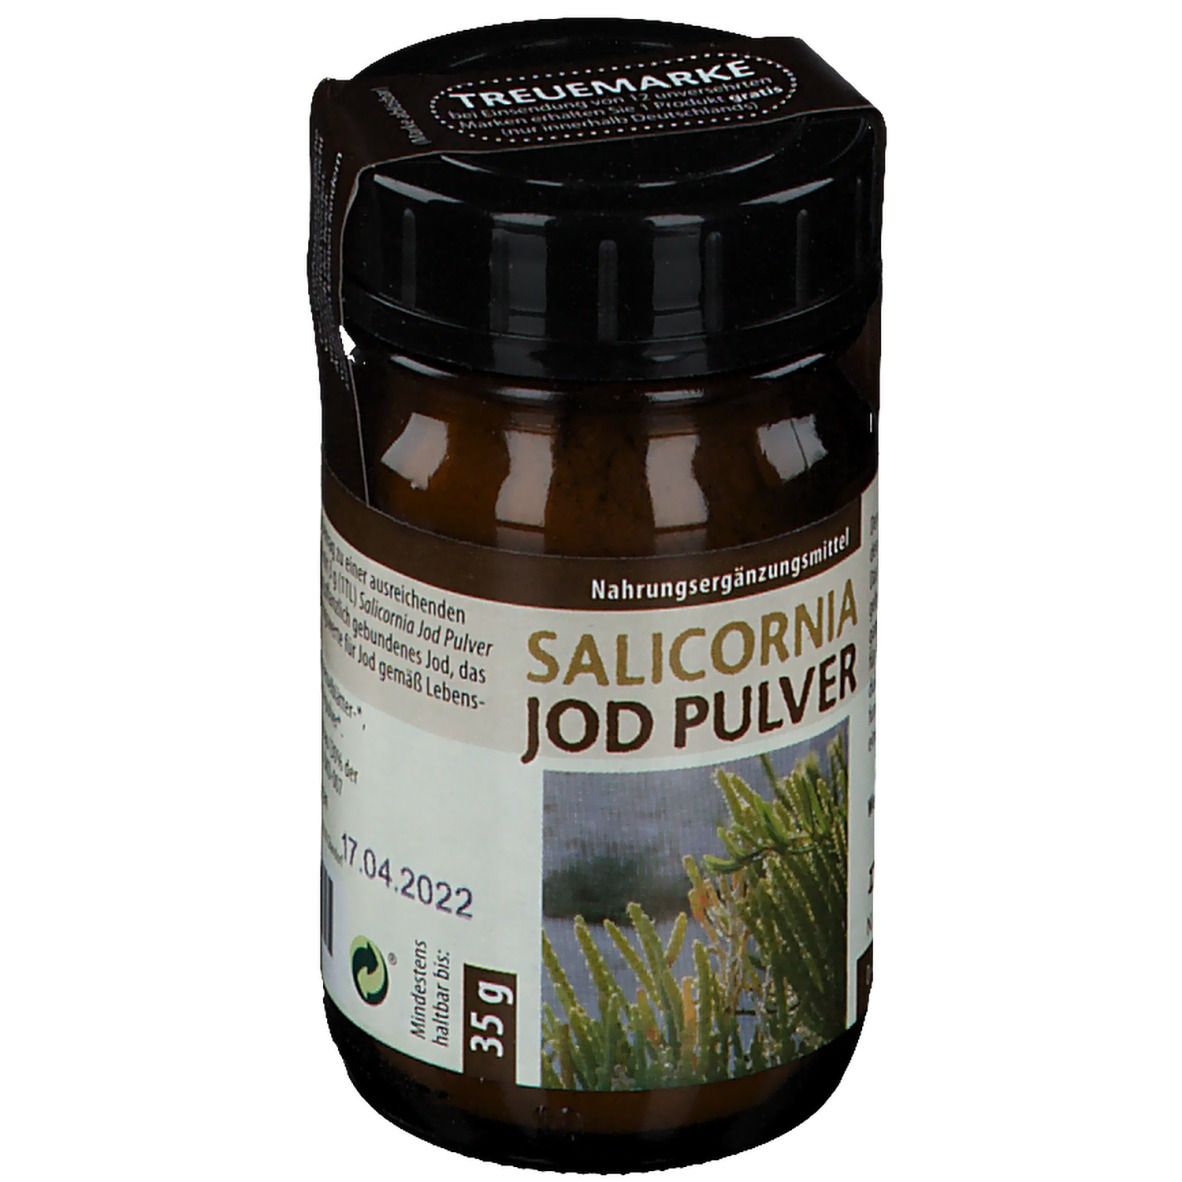 Dr. Pandalis Salicornia Jod Pulver